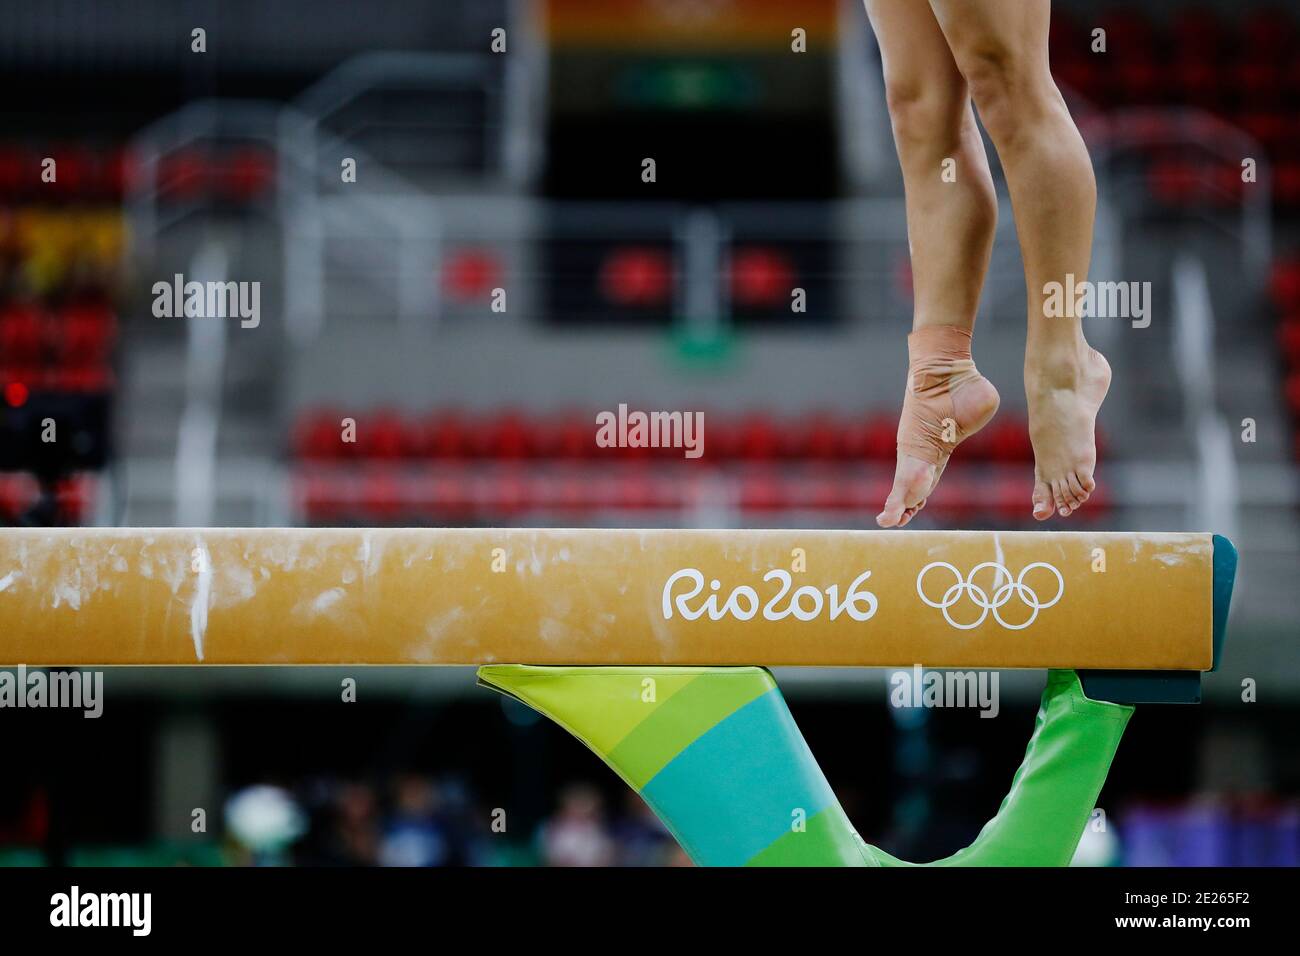 Concorso Balance Beam alla ginnastica artistica dei Giochi Olimpici estivi di Rio 2016. I piedi dell'atleta durante una sessione di allenamento delle prestazioni. Foto Stock